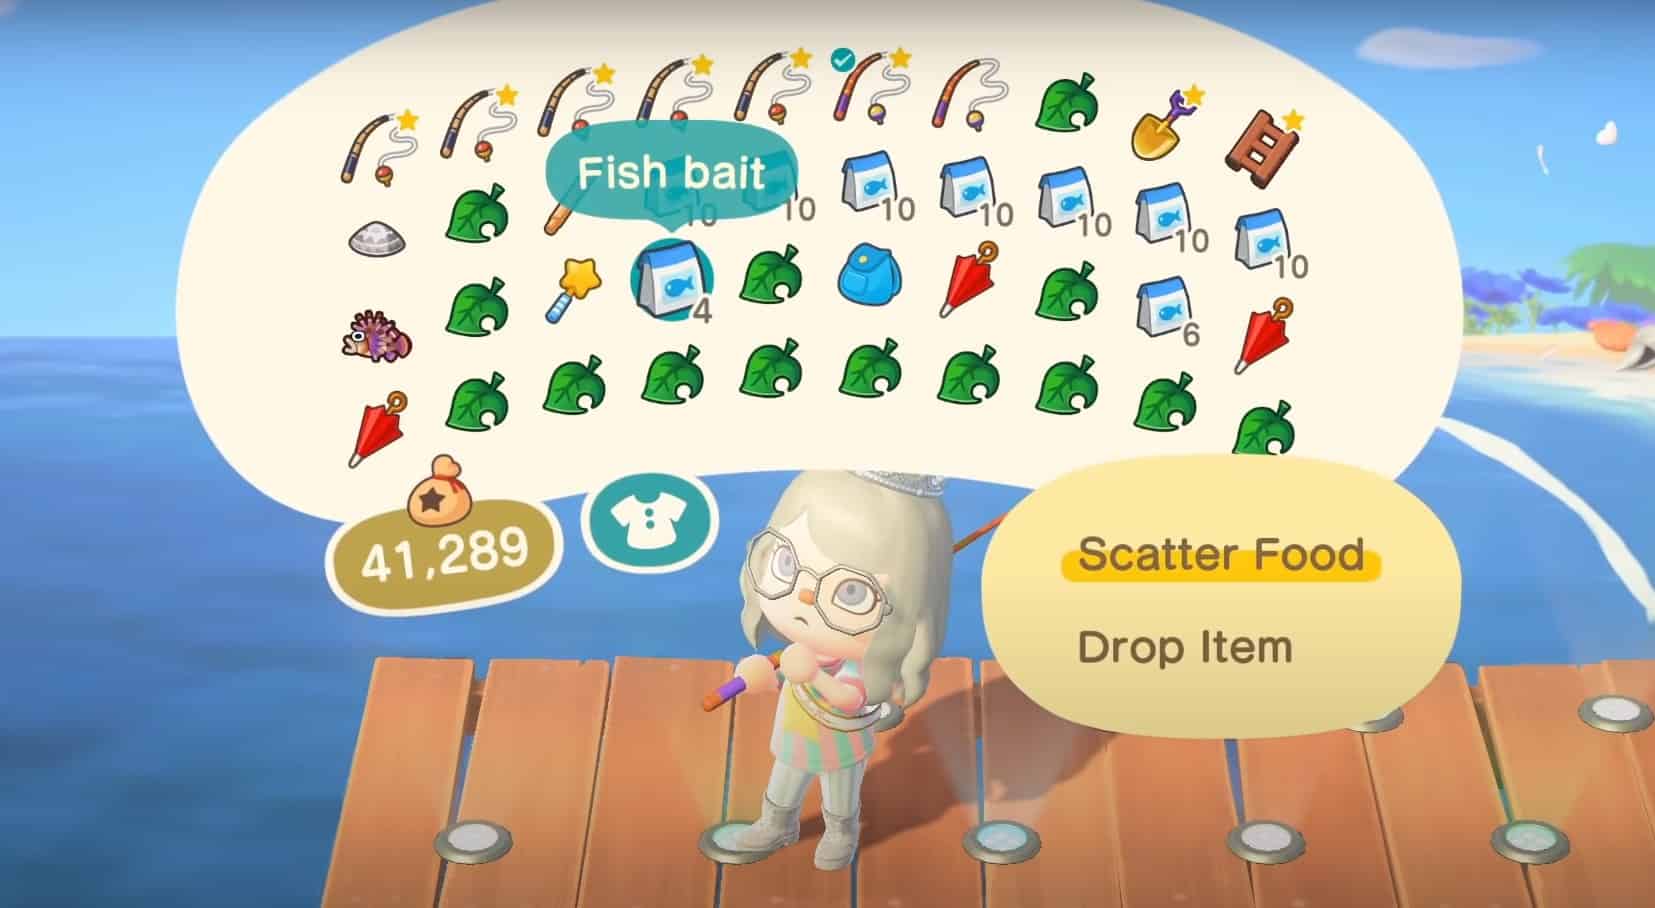 Torneo di pesca di Animal Crossing New Horizons